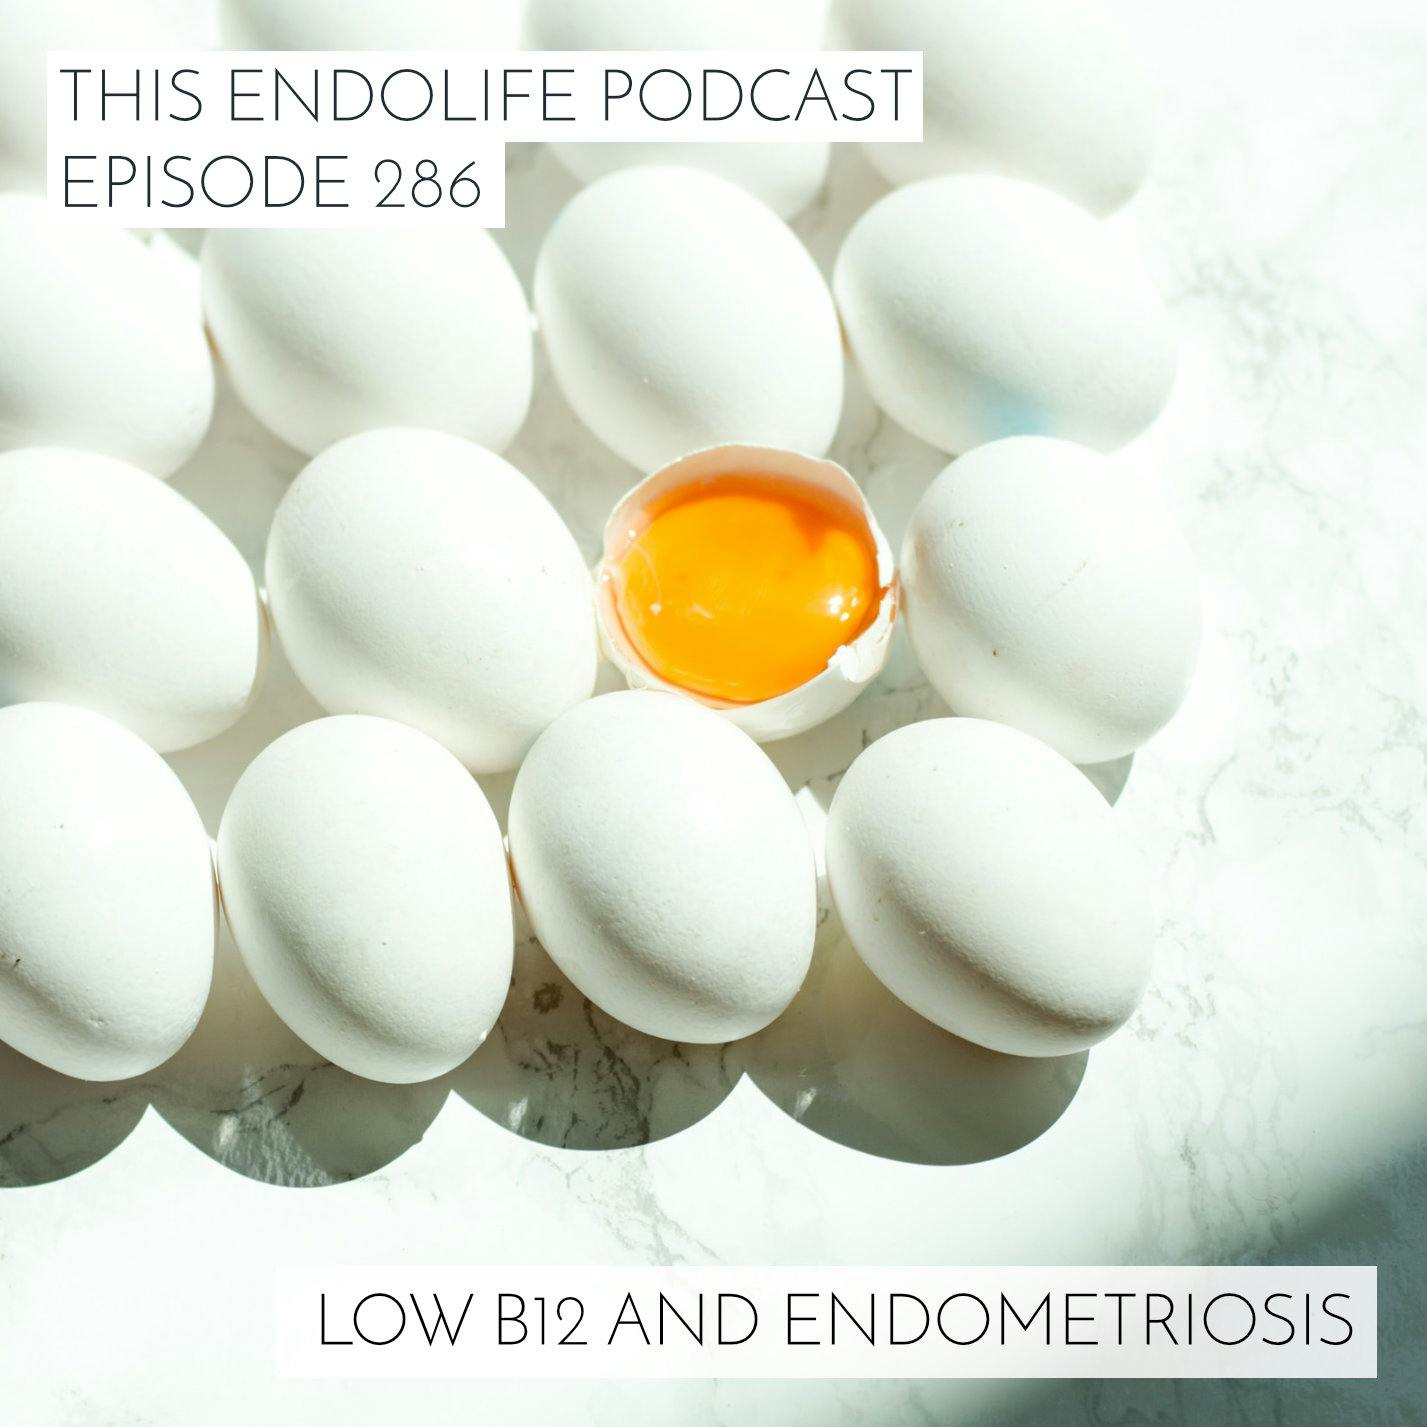 Low B12 and Endometriosis